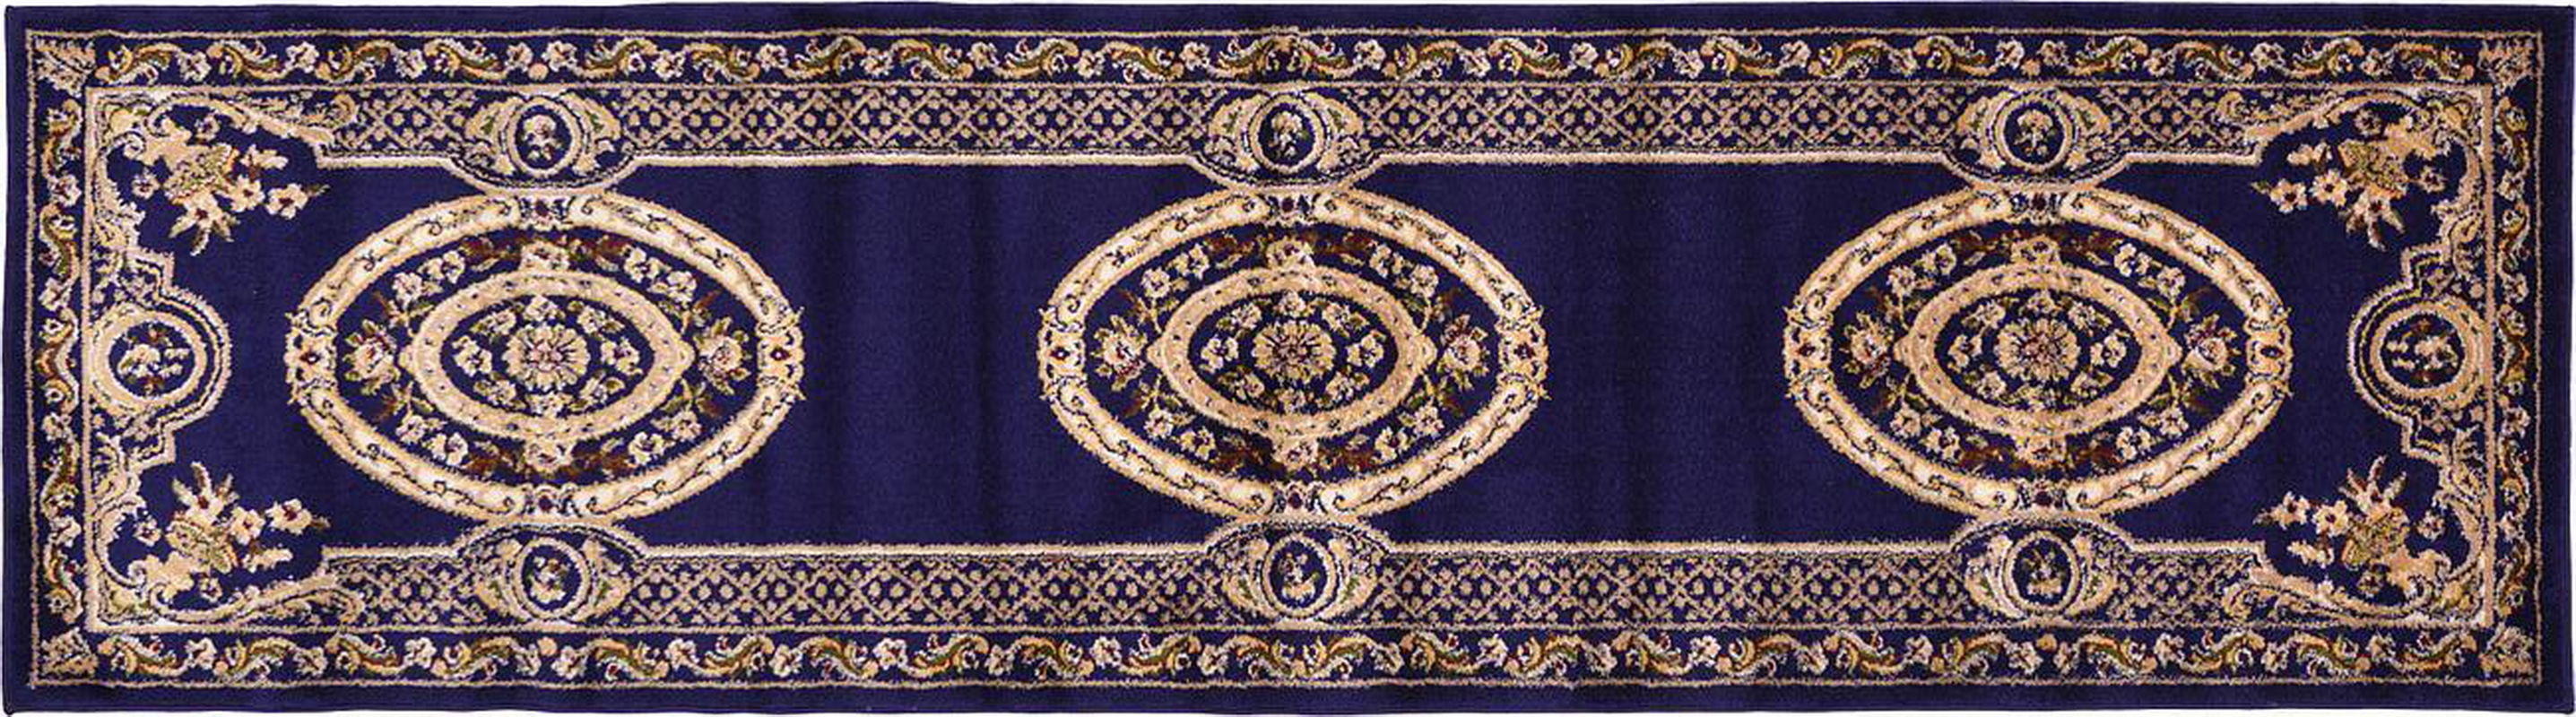 古典经典地毯ID10229